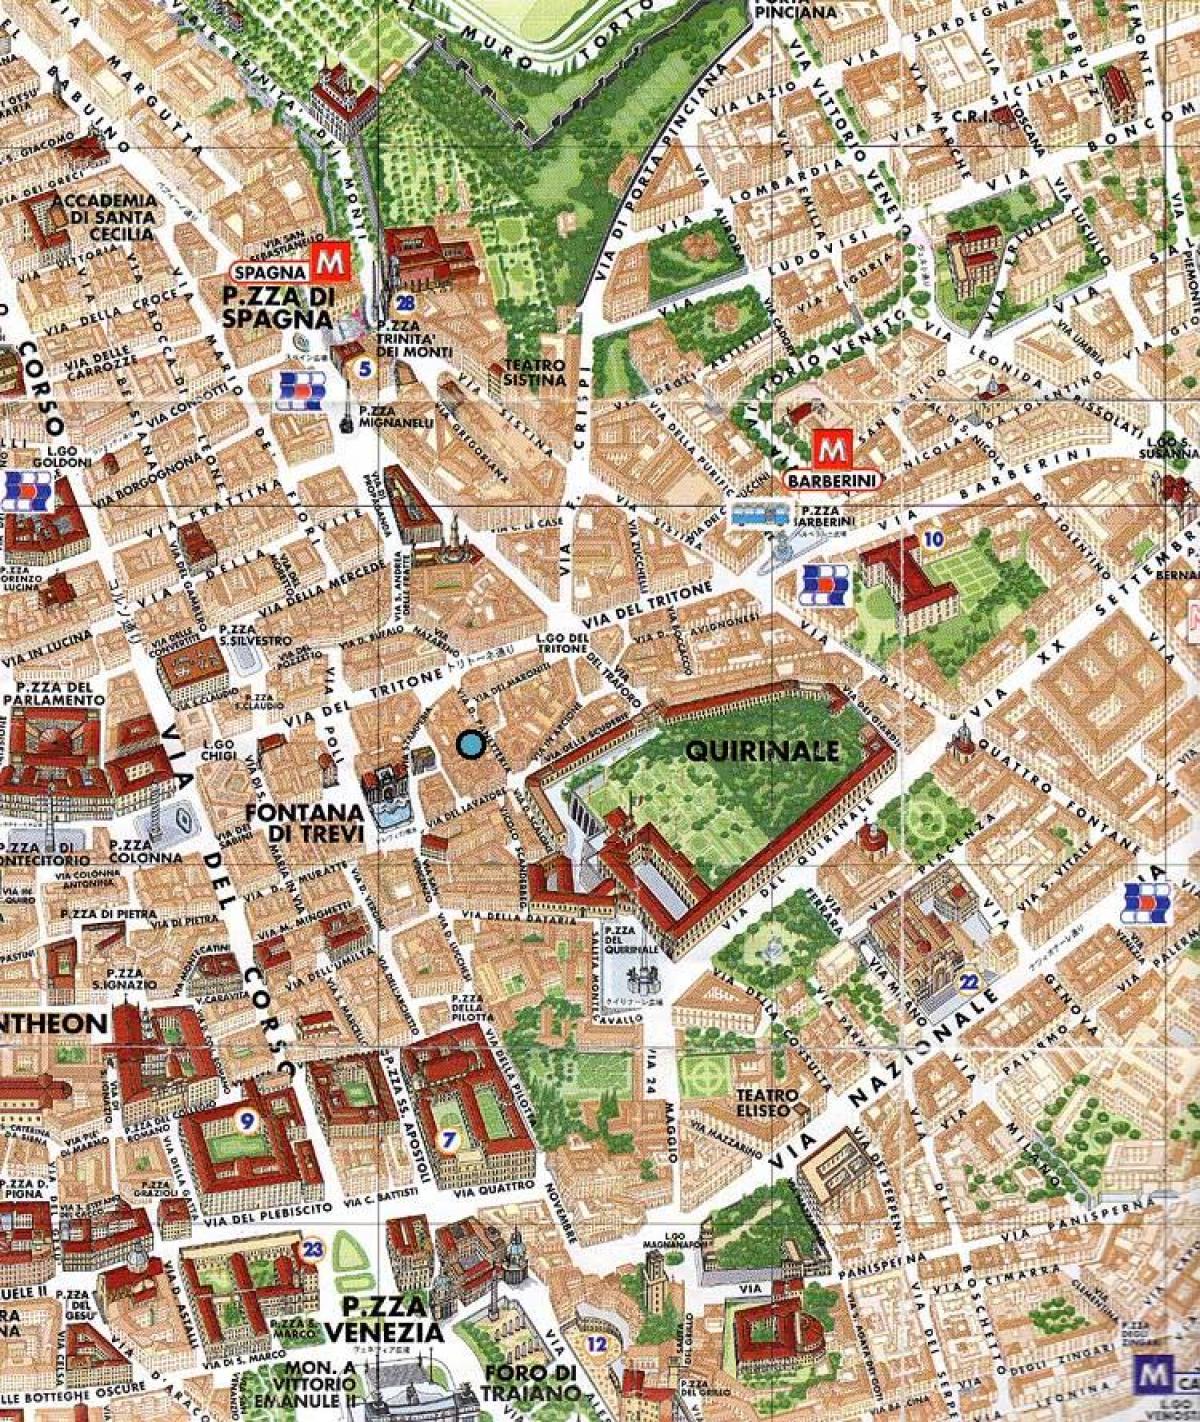 Mapa da fonte de trevi Roma 